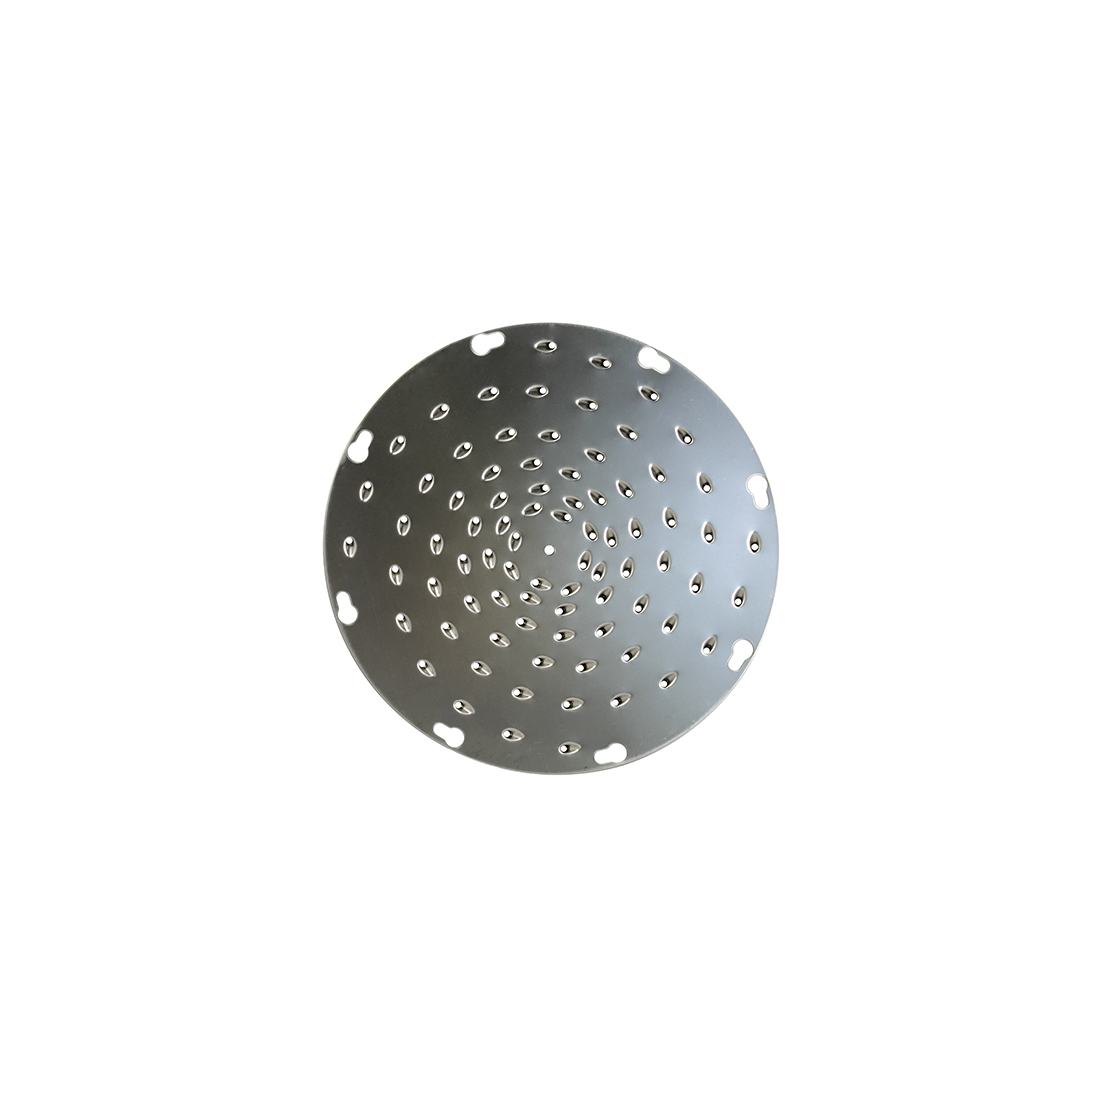 ALFA KD 5/32 Grater-Shredder Disk (German Made, 5/32" Holes)